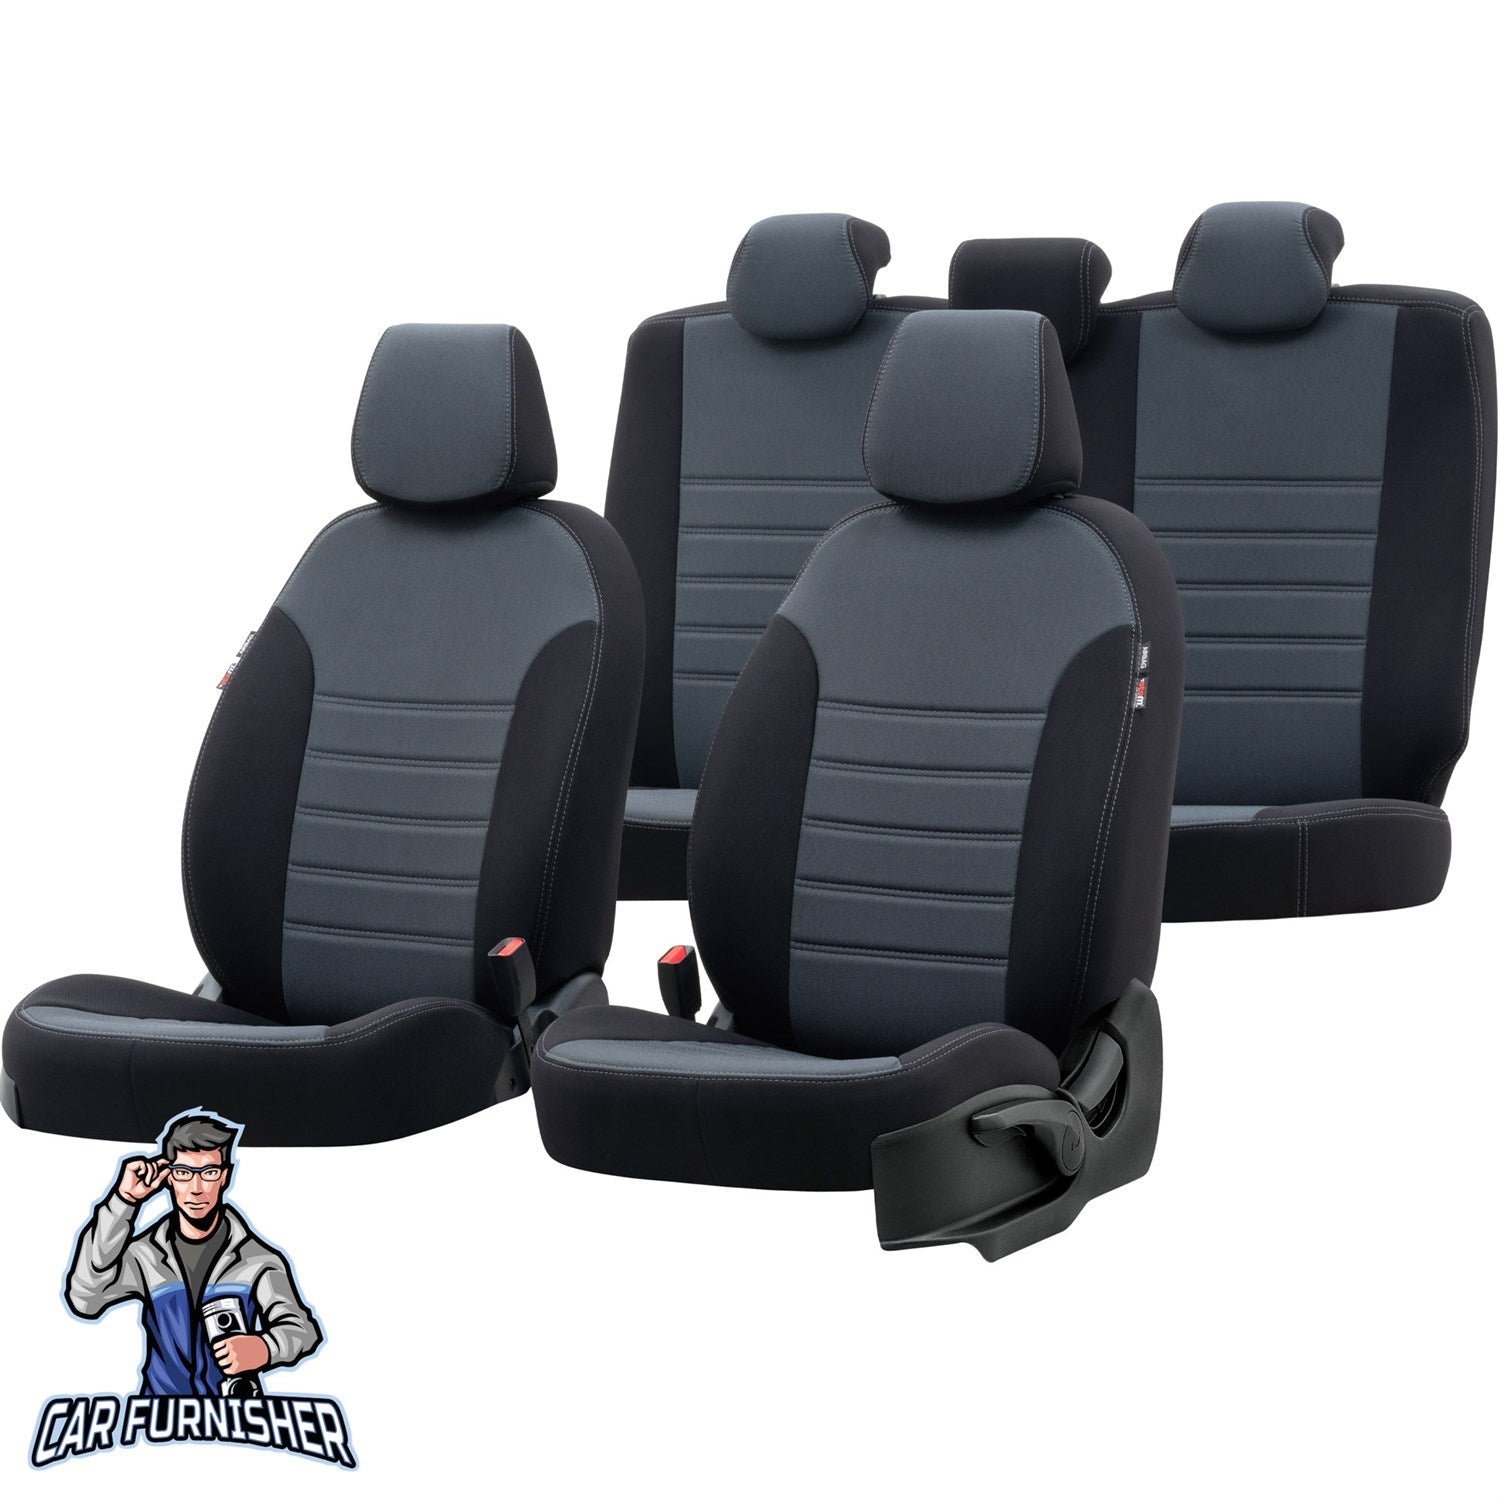 Jeep Grand Cherokee Seat Cover Original Jacquard Design Smoked Black Jacquard Fabric